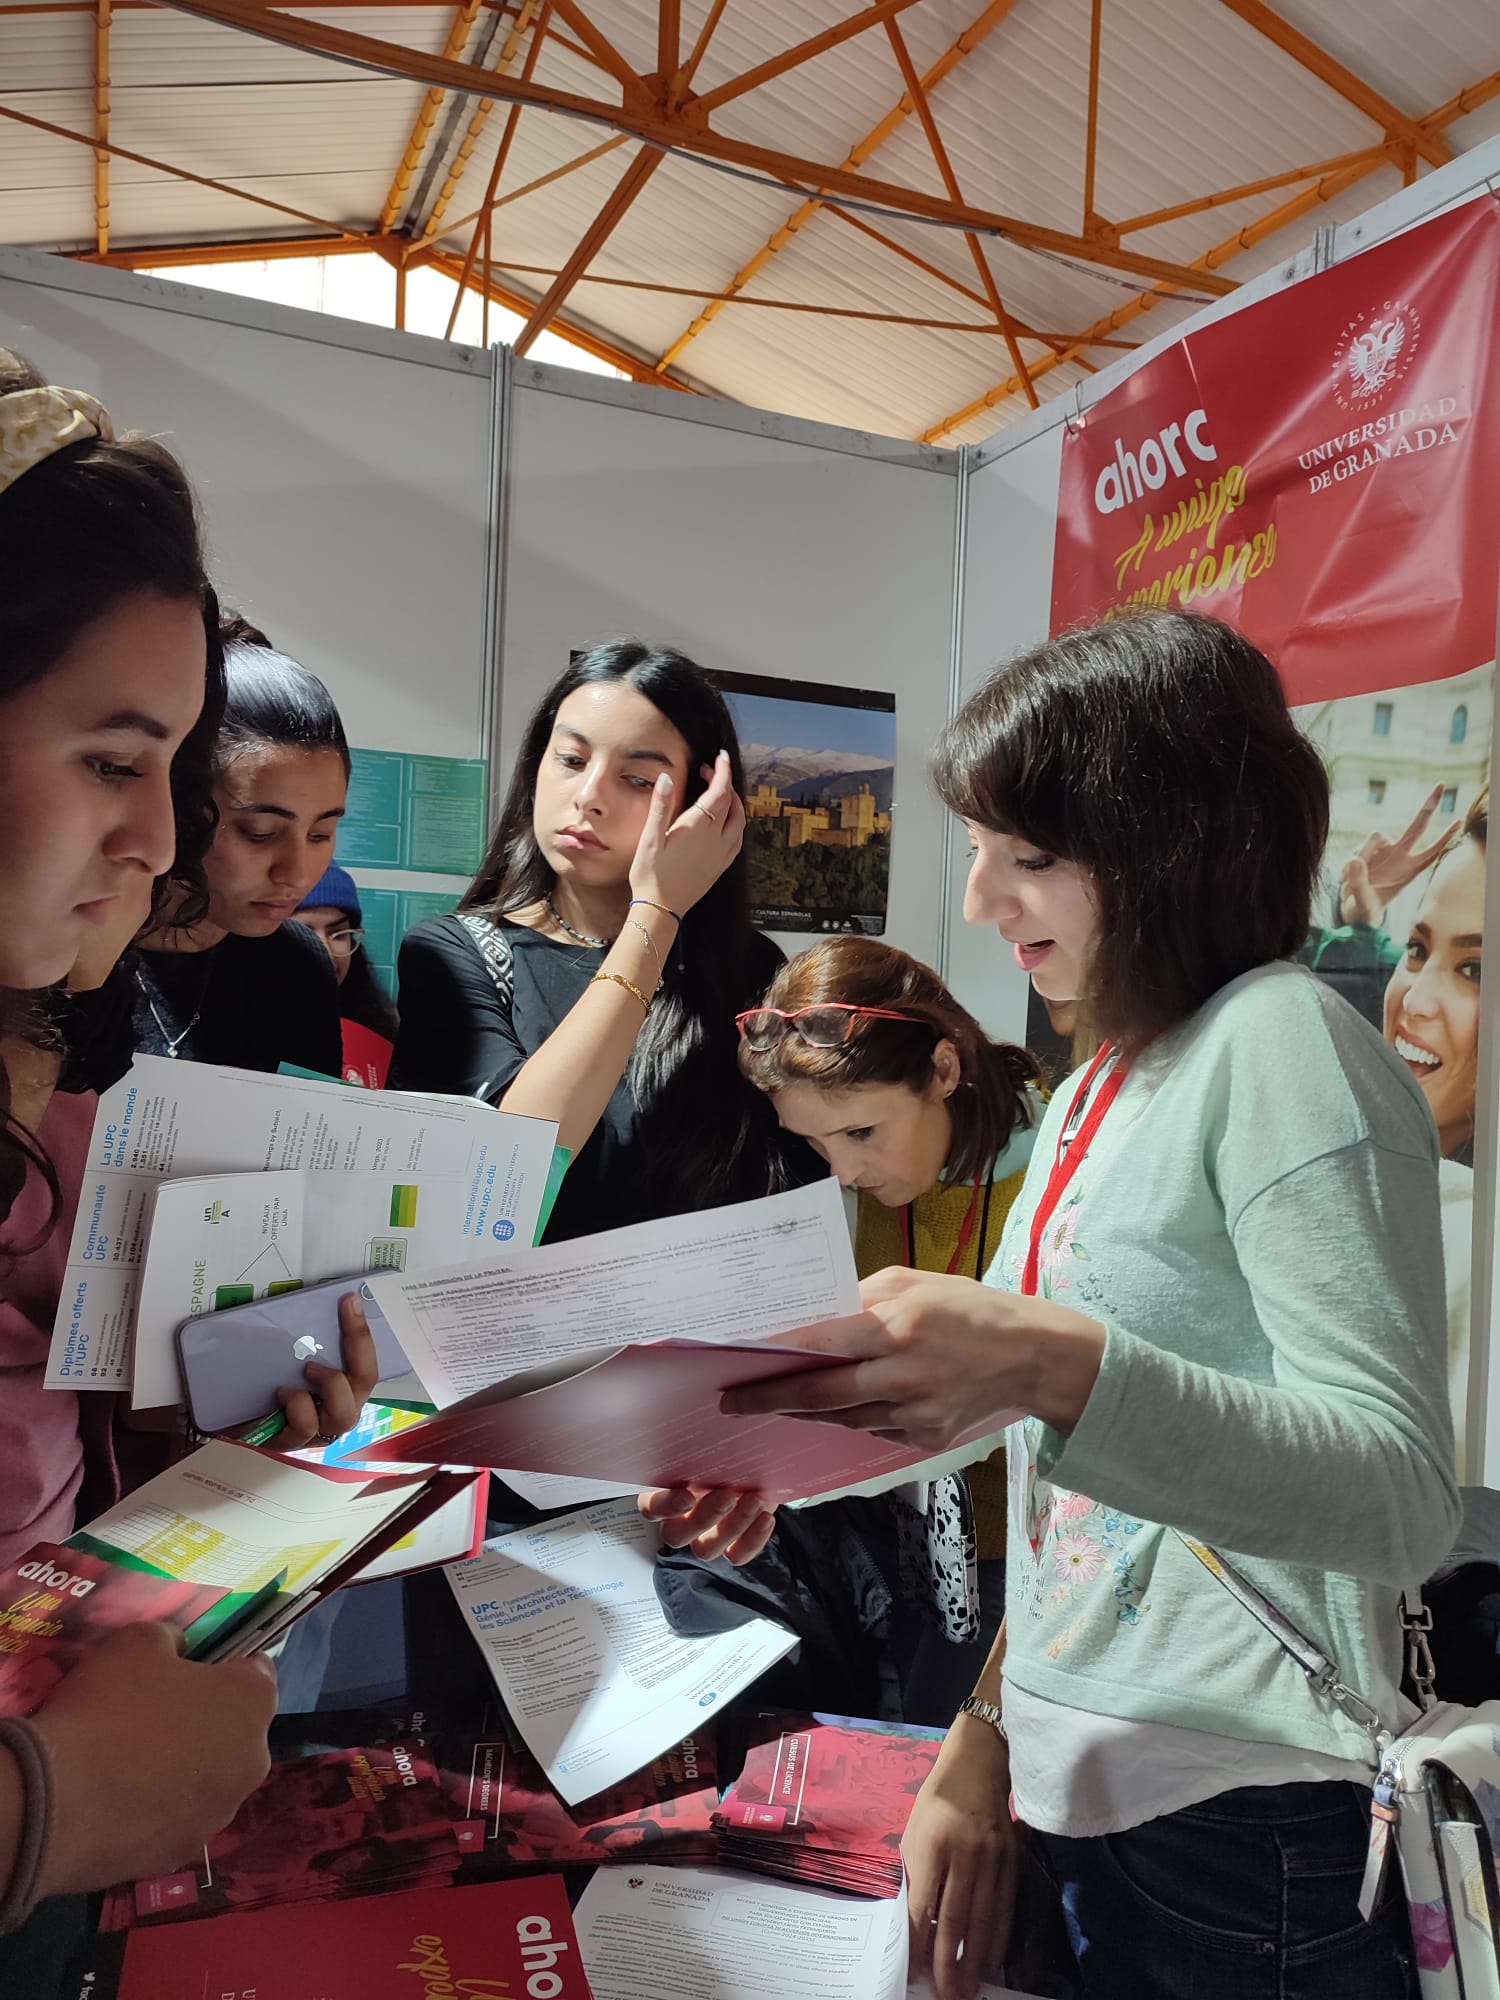 La UGR participa en la VIII feria “Estudiar en España” en Marruecos